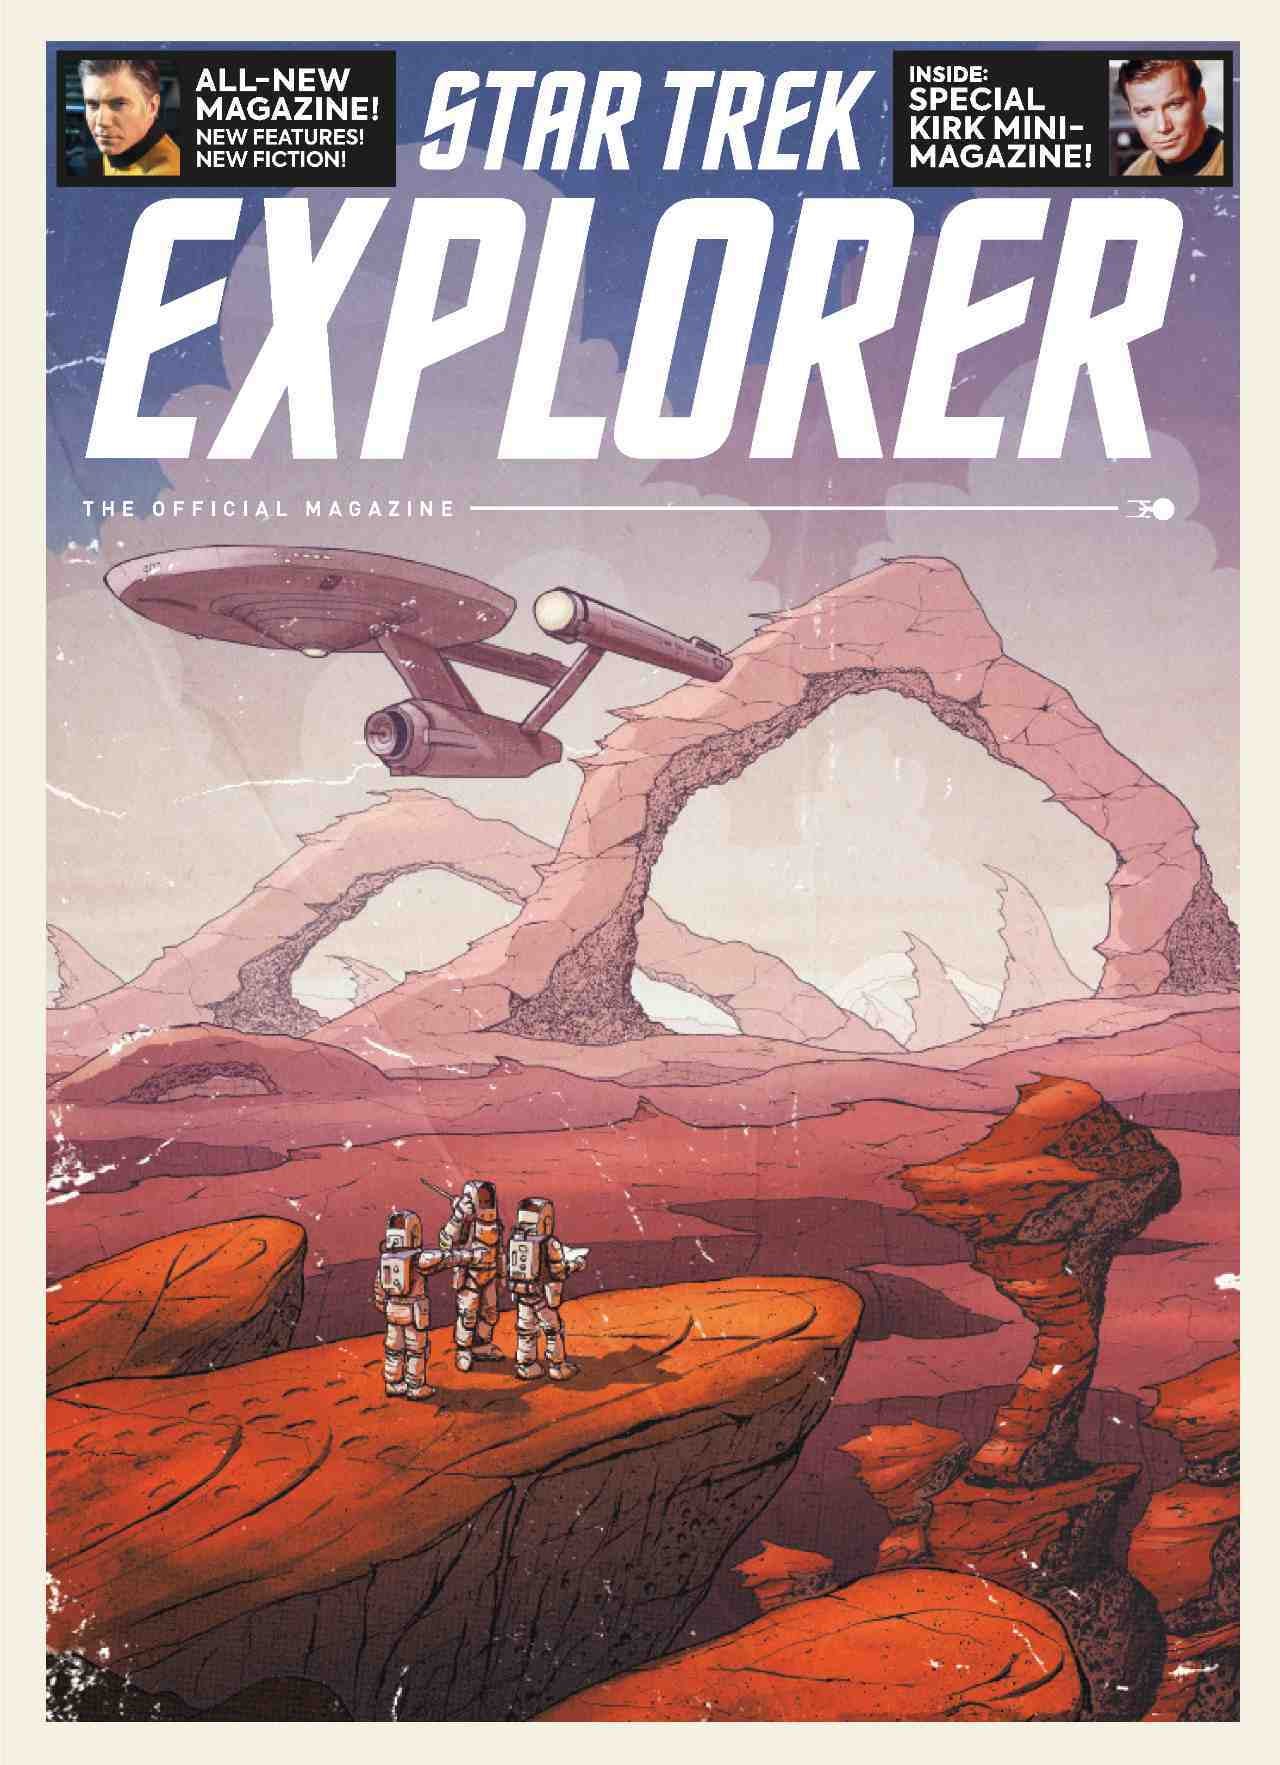 Star Trek Explorer - The Official Magazine - portada exclusiva del minorista